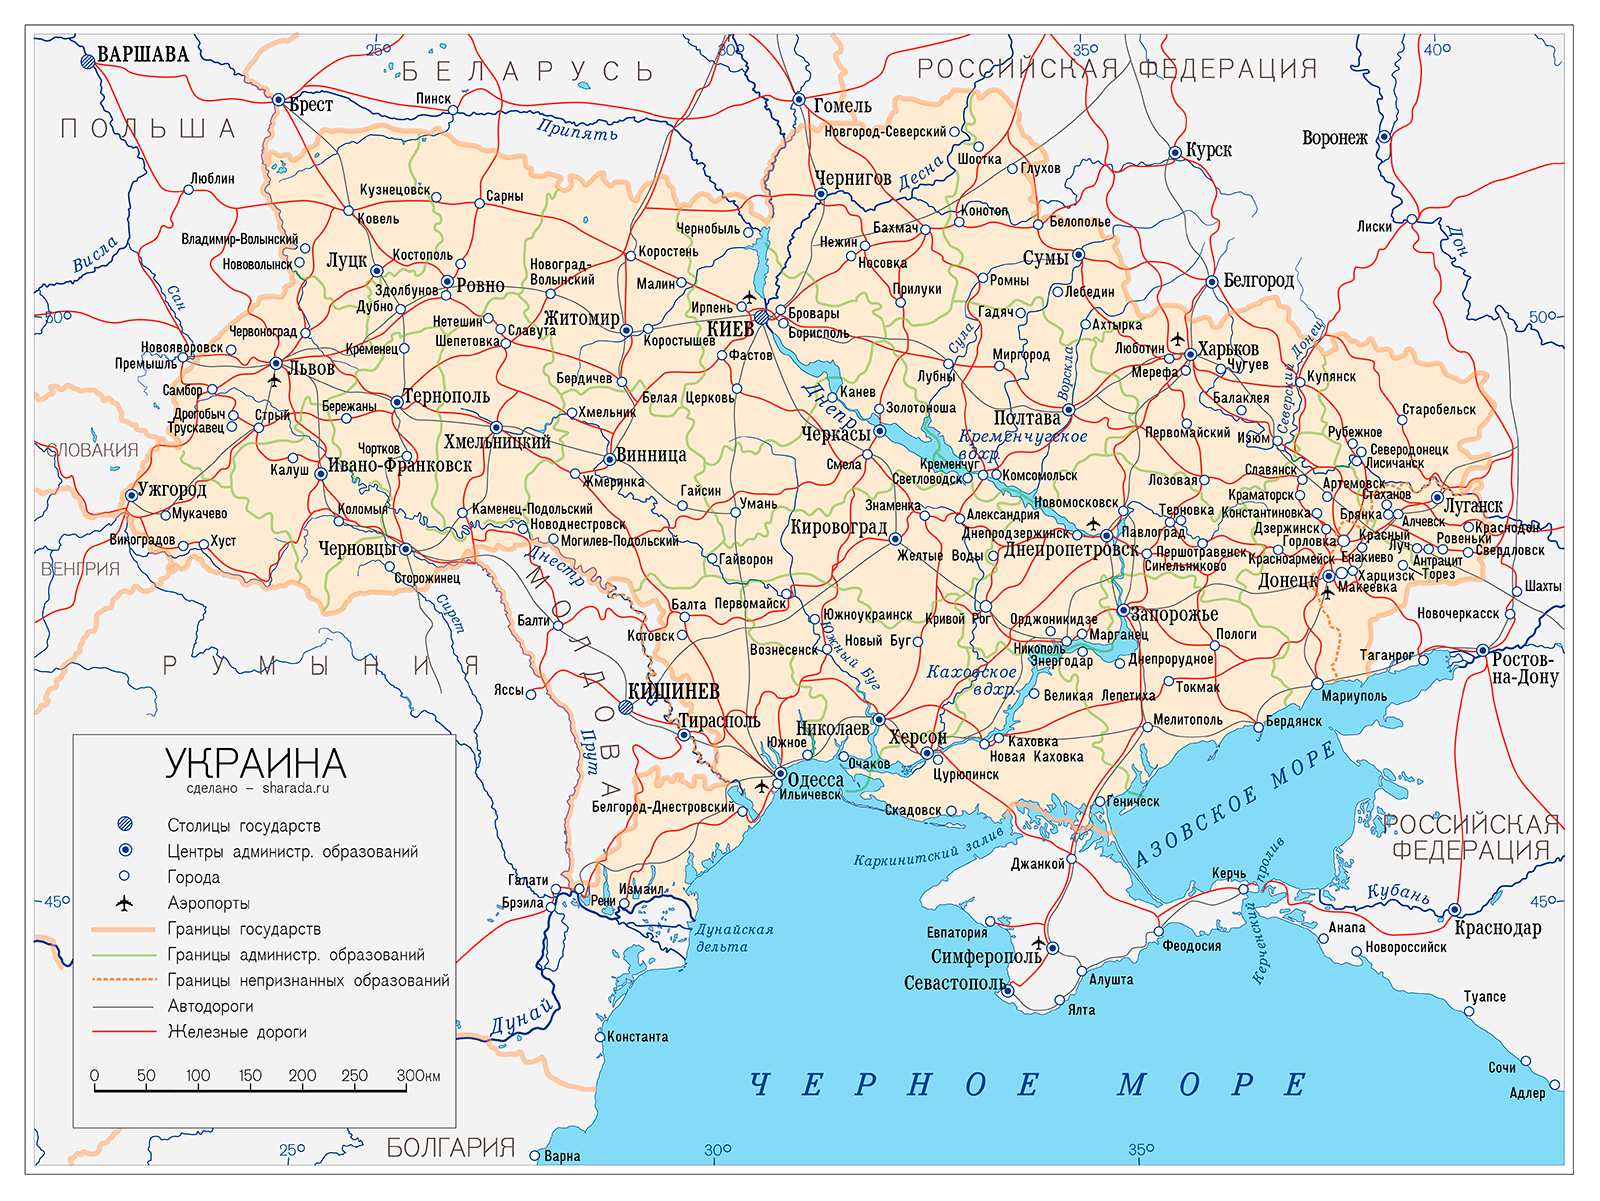 Показало карту районов украины. Карта Украины с поселками подробная. Подробная карта Украины с городами и селами по областям. Карта Украины физическая подробная. Карта Юга Украины подробная.